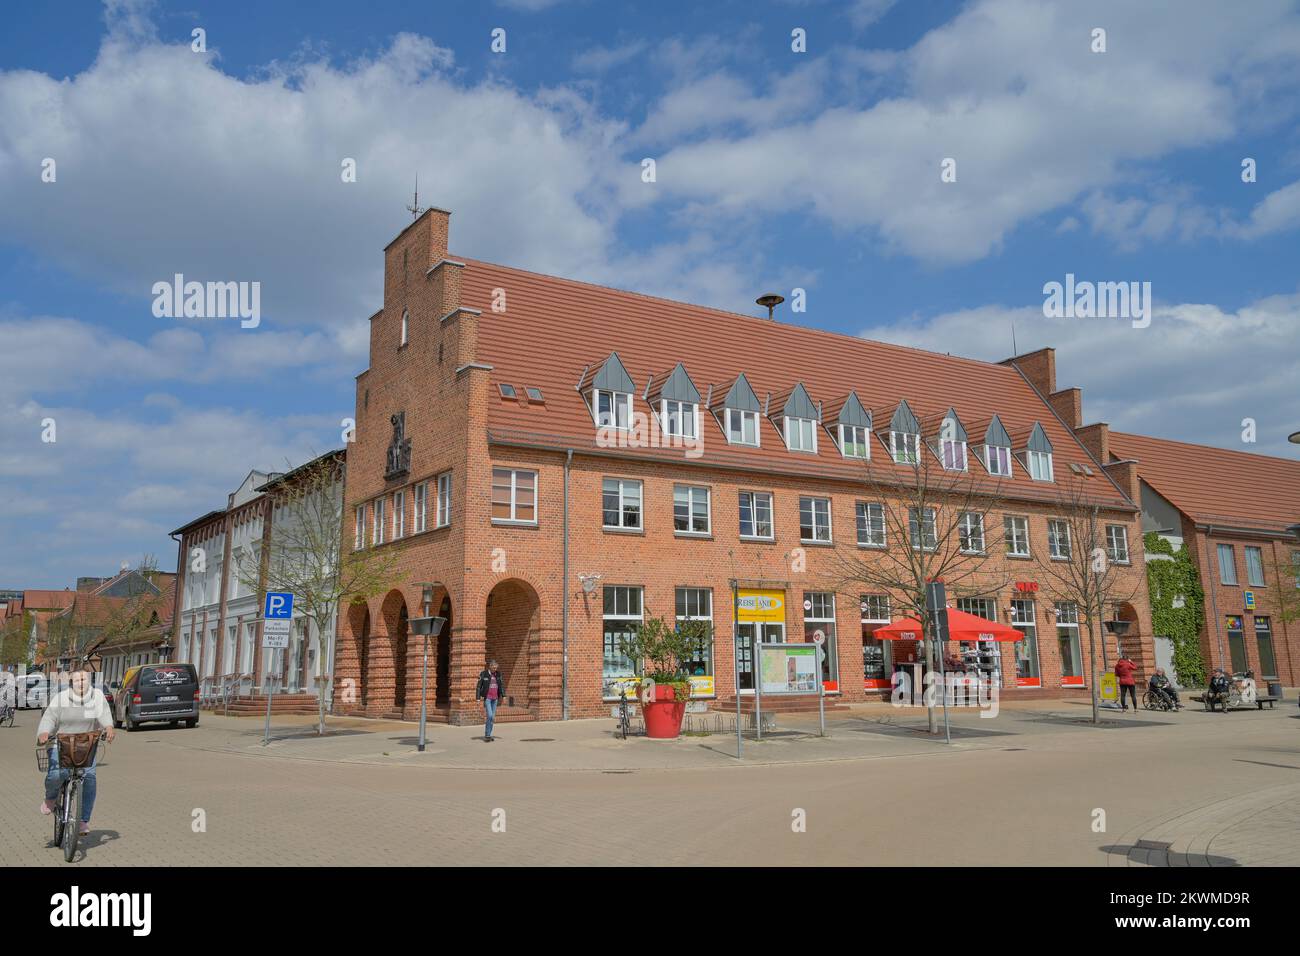 Altbau, Breite Straße, Ludwigslust, Mecklenburg-Vorpommern, Deutschland Stock Photo